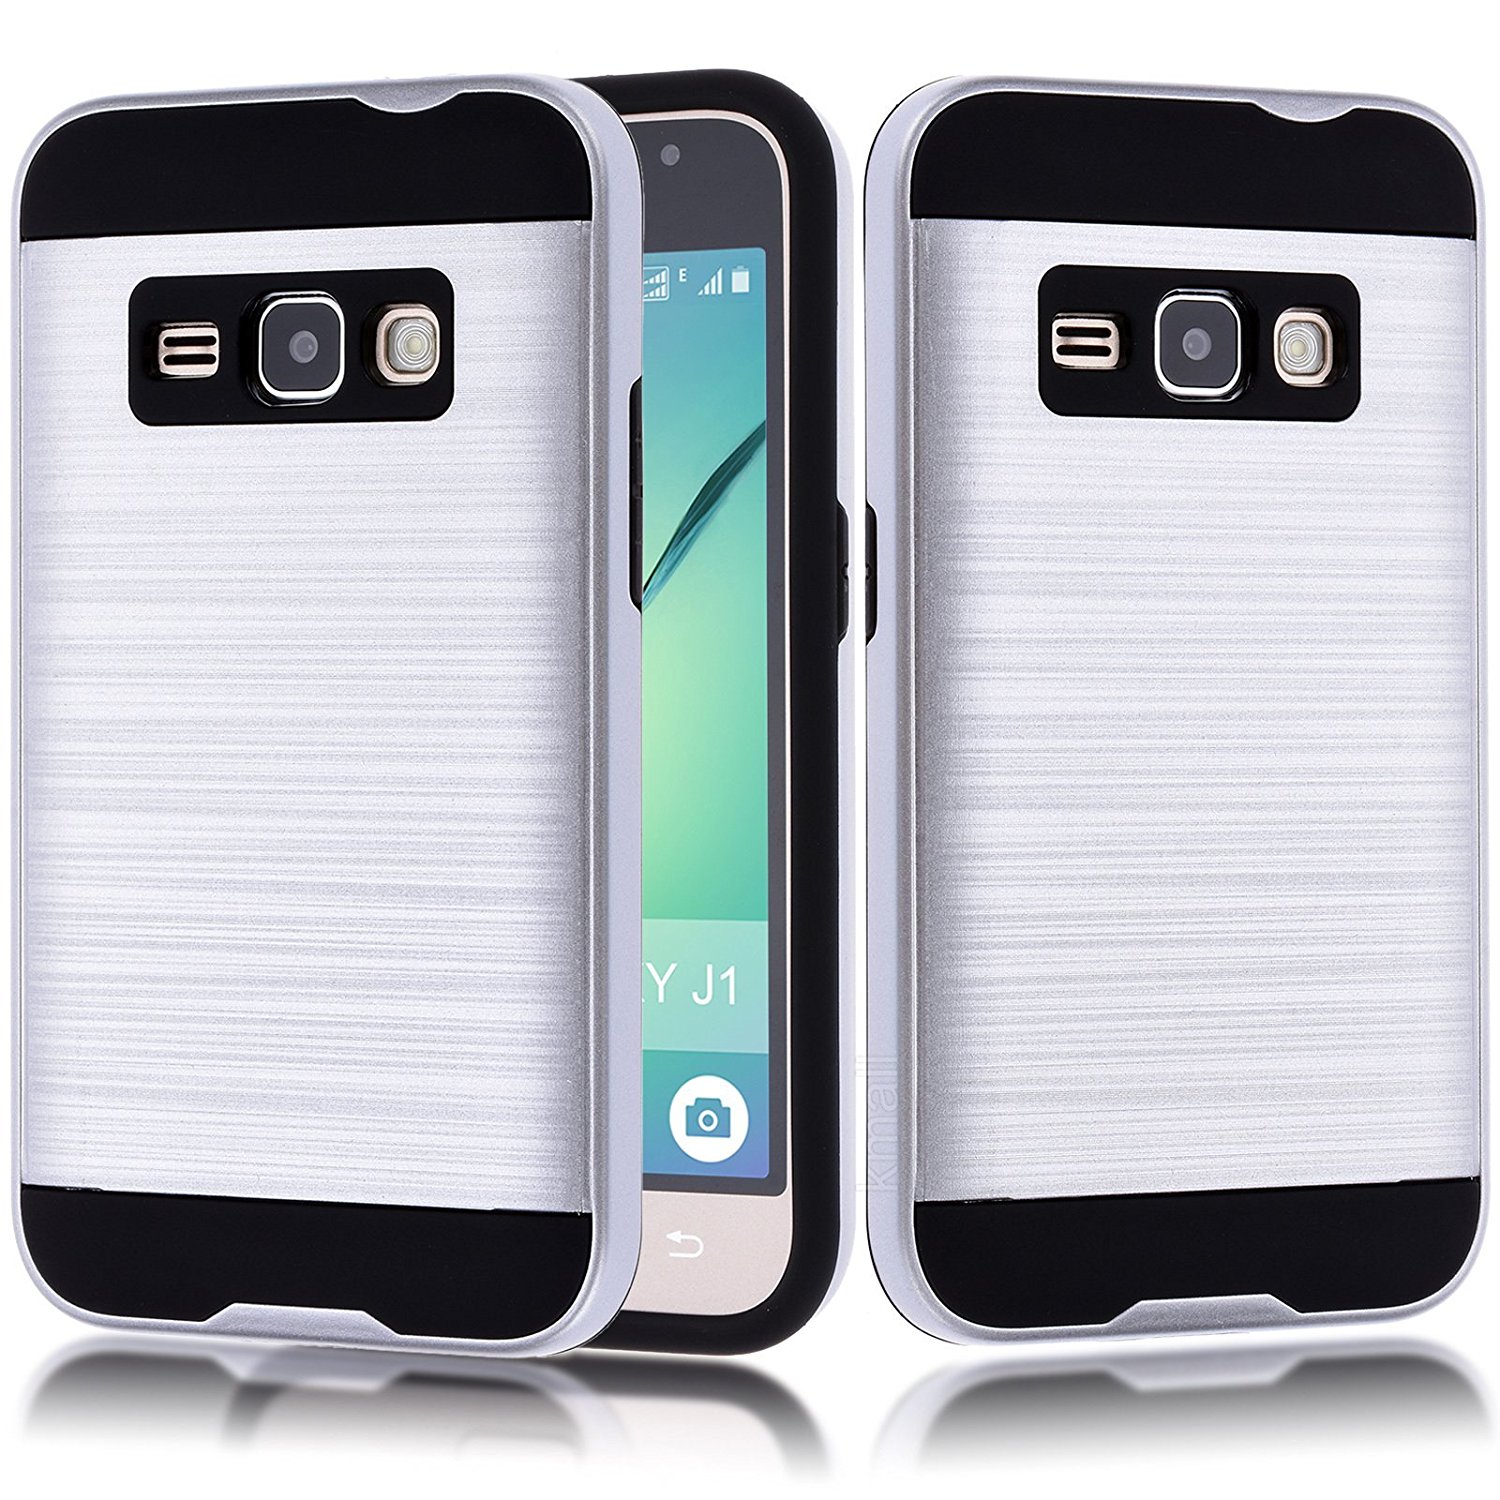 Samsung Galaxy J1 (2016) / Amp 2 / Express 3 / Galaxy Luna Armor Hybrid Case (Silver)